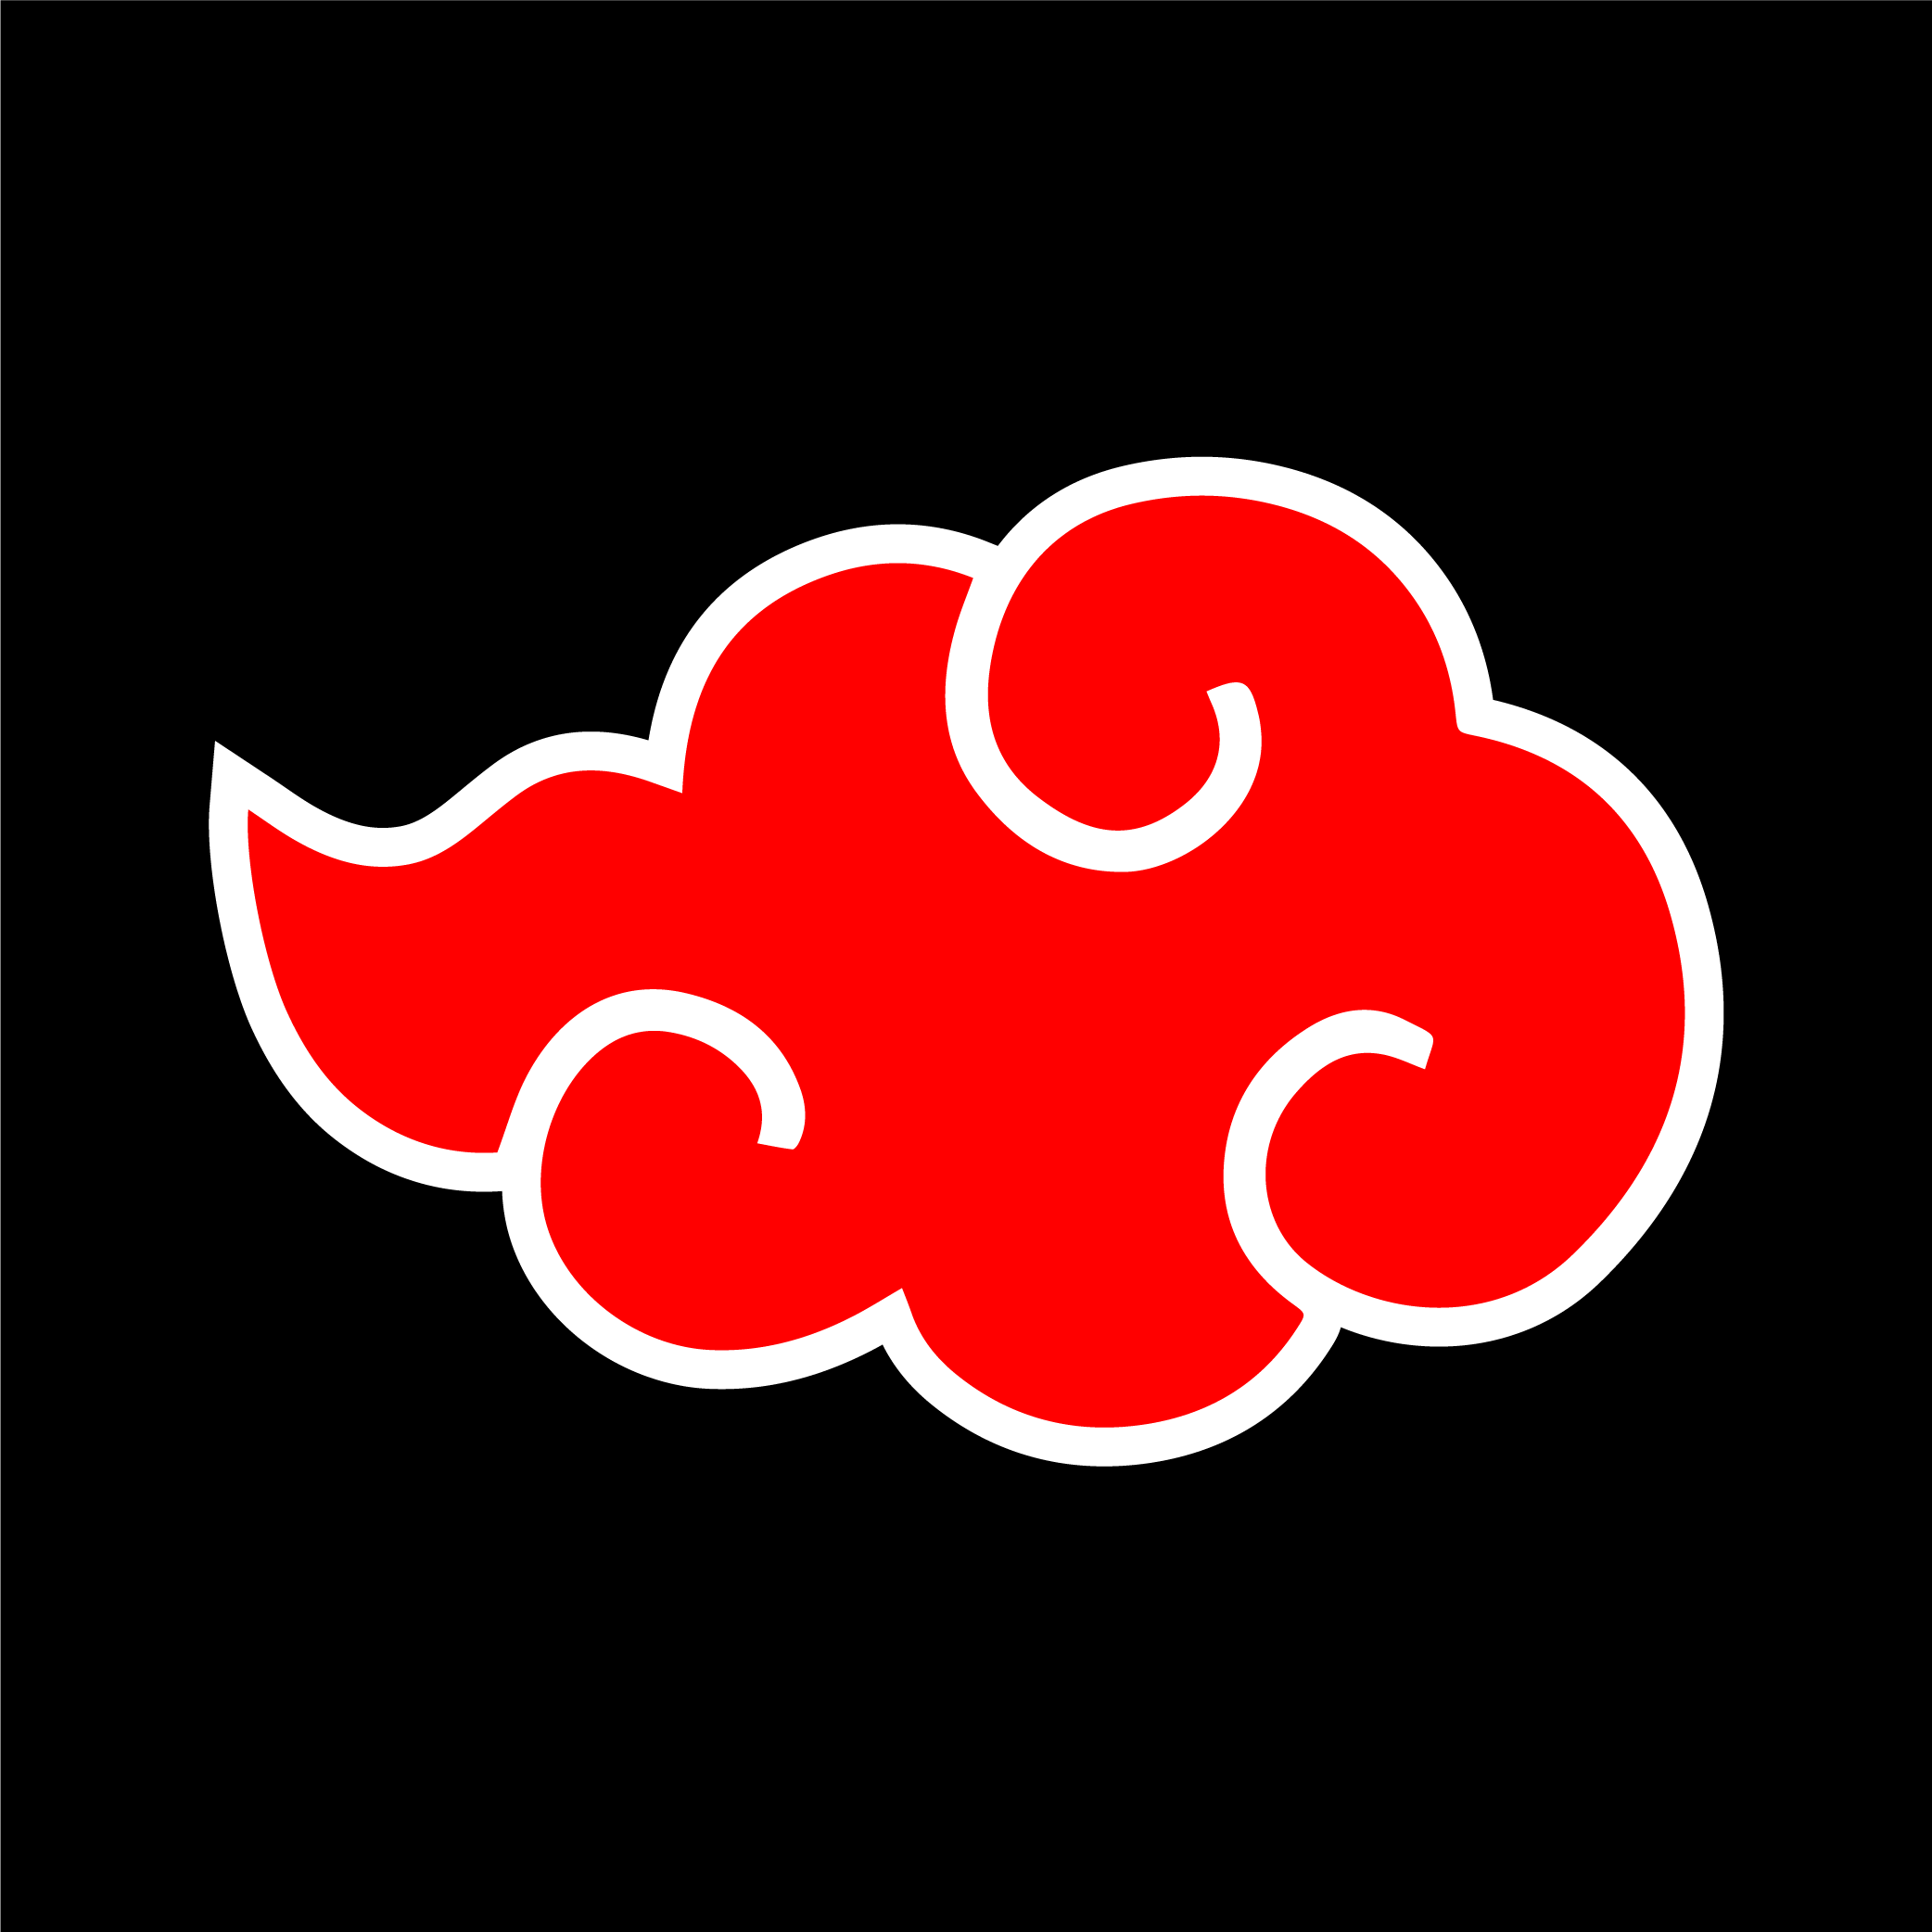 Akatsuki simbolo naruto png